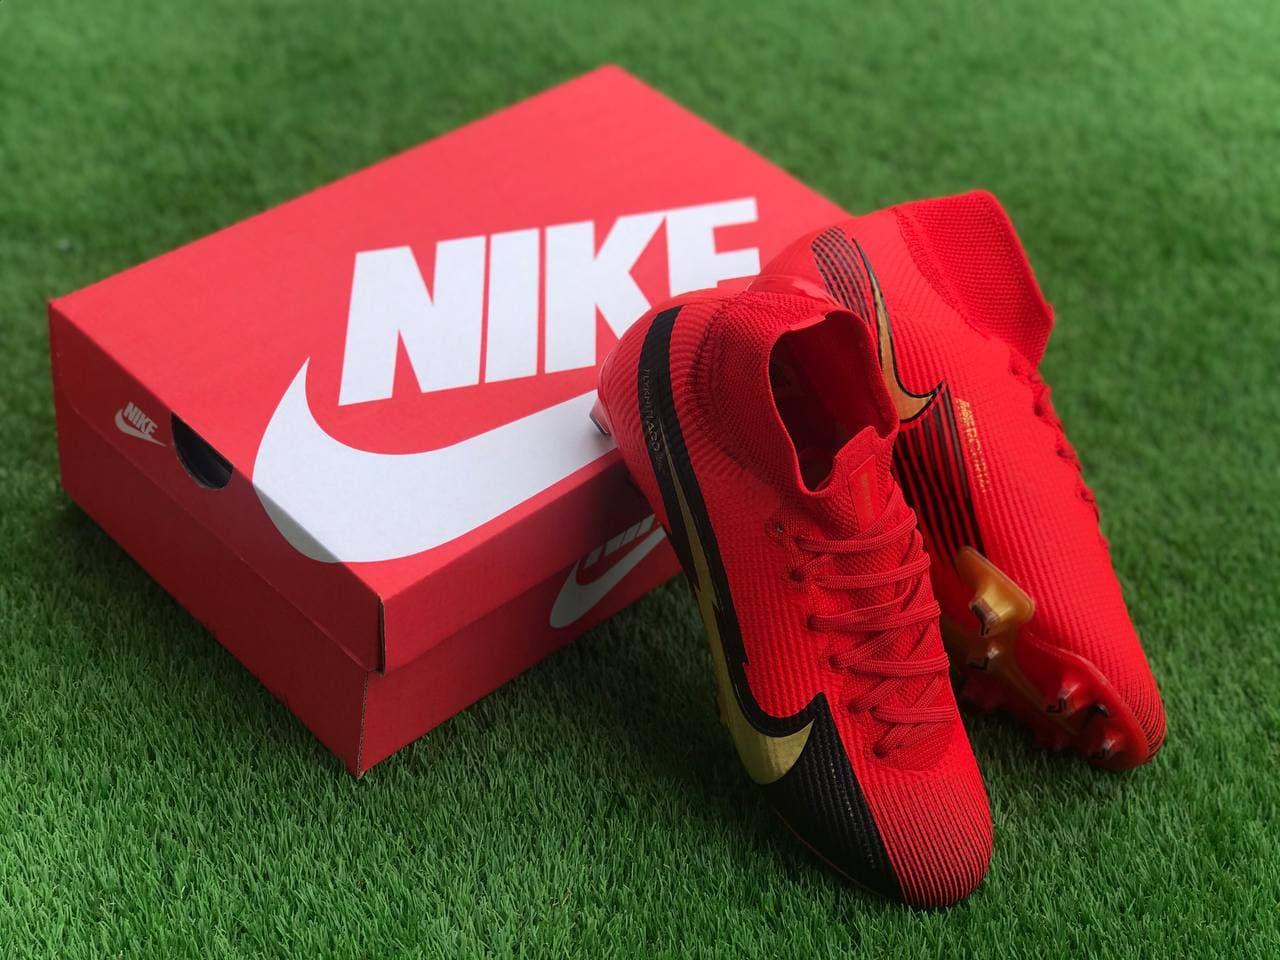 

Футбольные Бутсы Nike Mercurial Vapor 13 спортивная обувь для футбола найк меркуриал красные, Красный